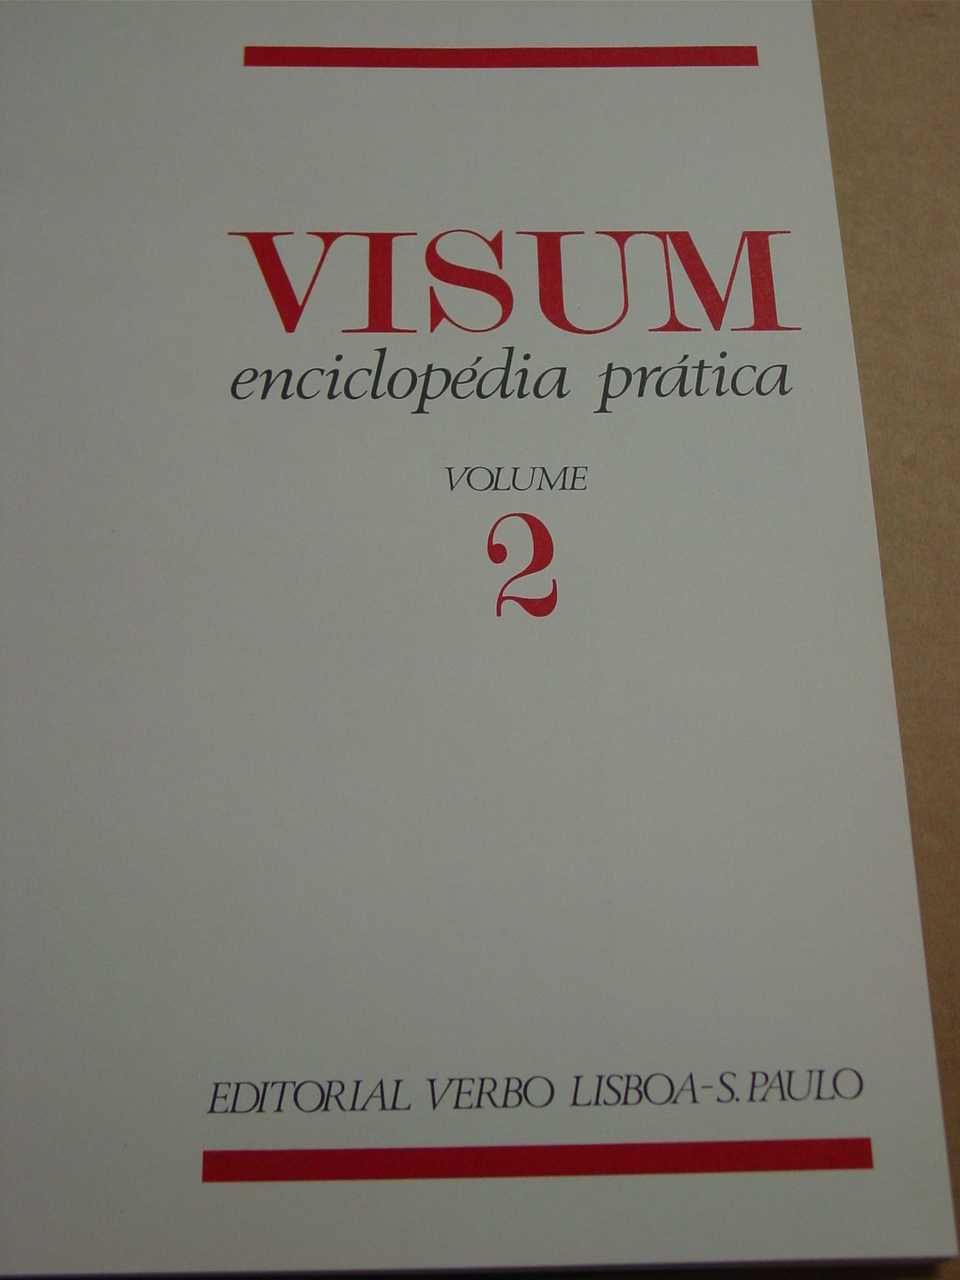 Enciclopédia "Visum" - preço é pelos 10 volumes